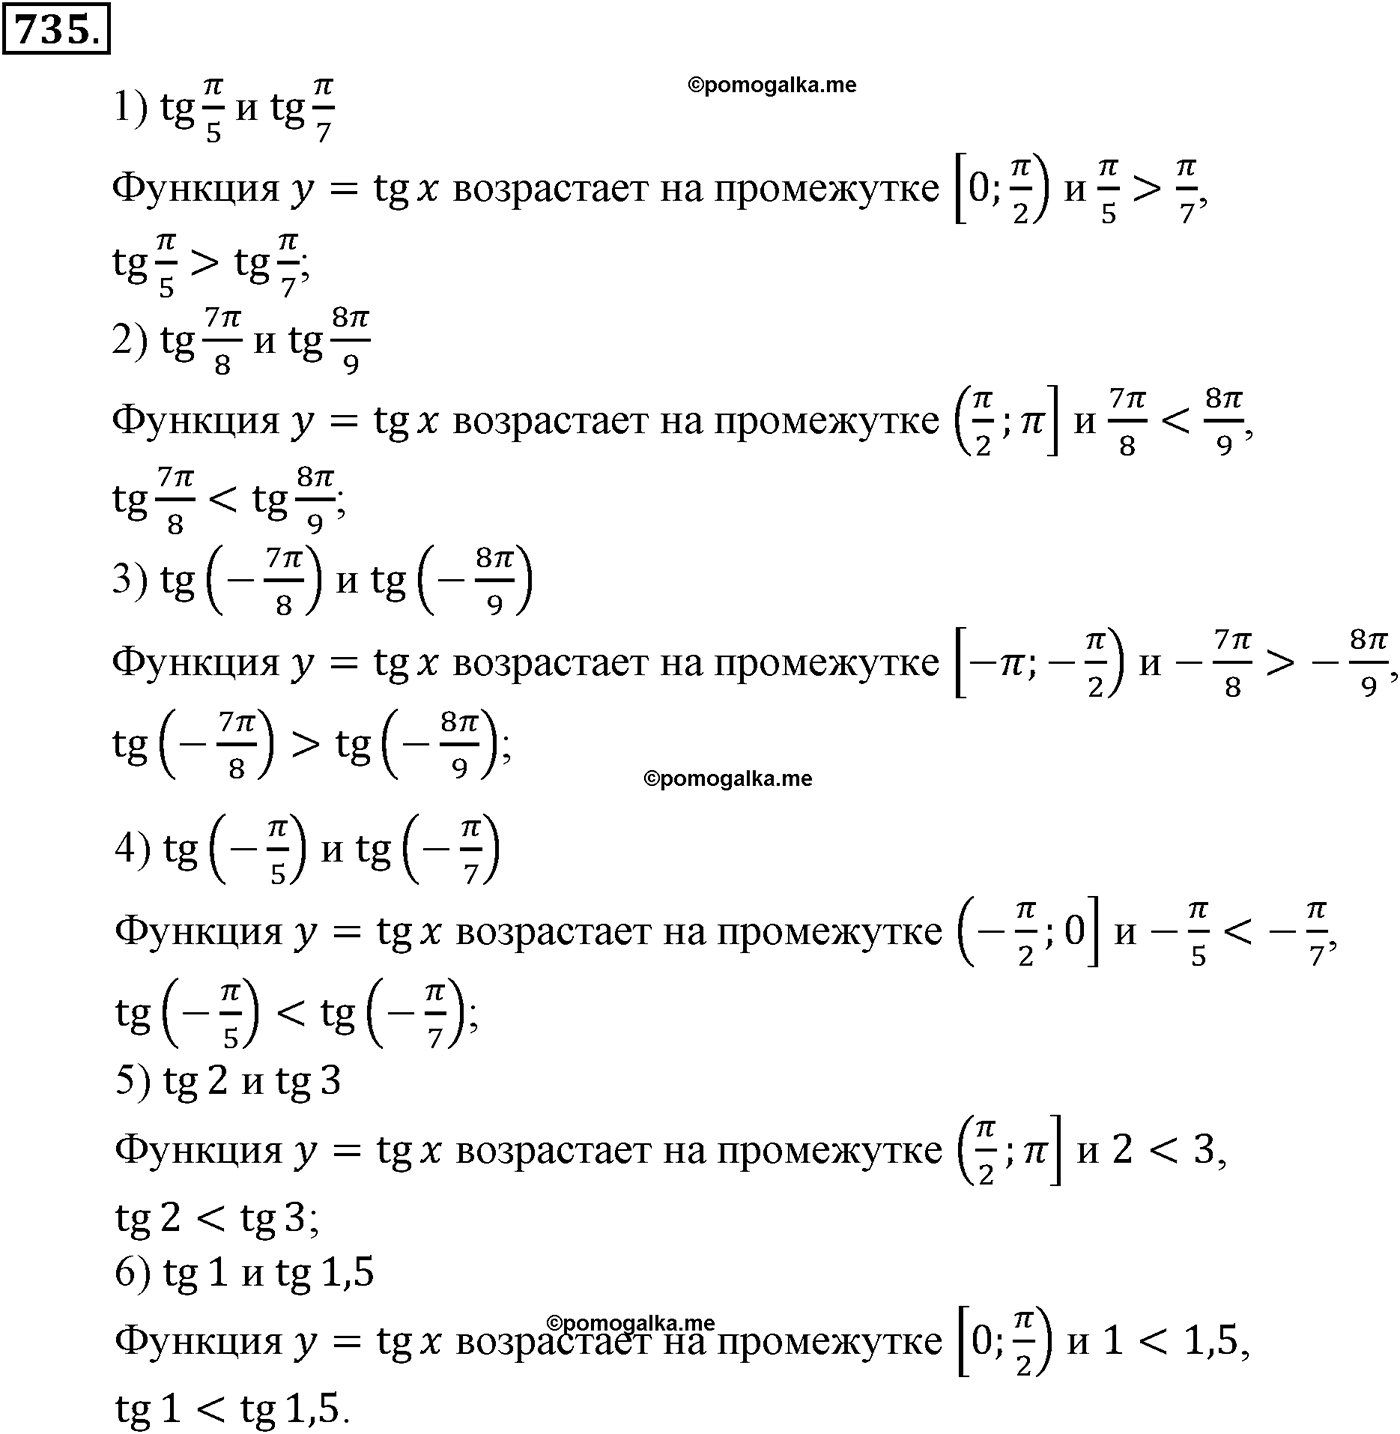 разбор задачи №735 по алгебре за 10-11 класс из учебника Алимова, Колягина